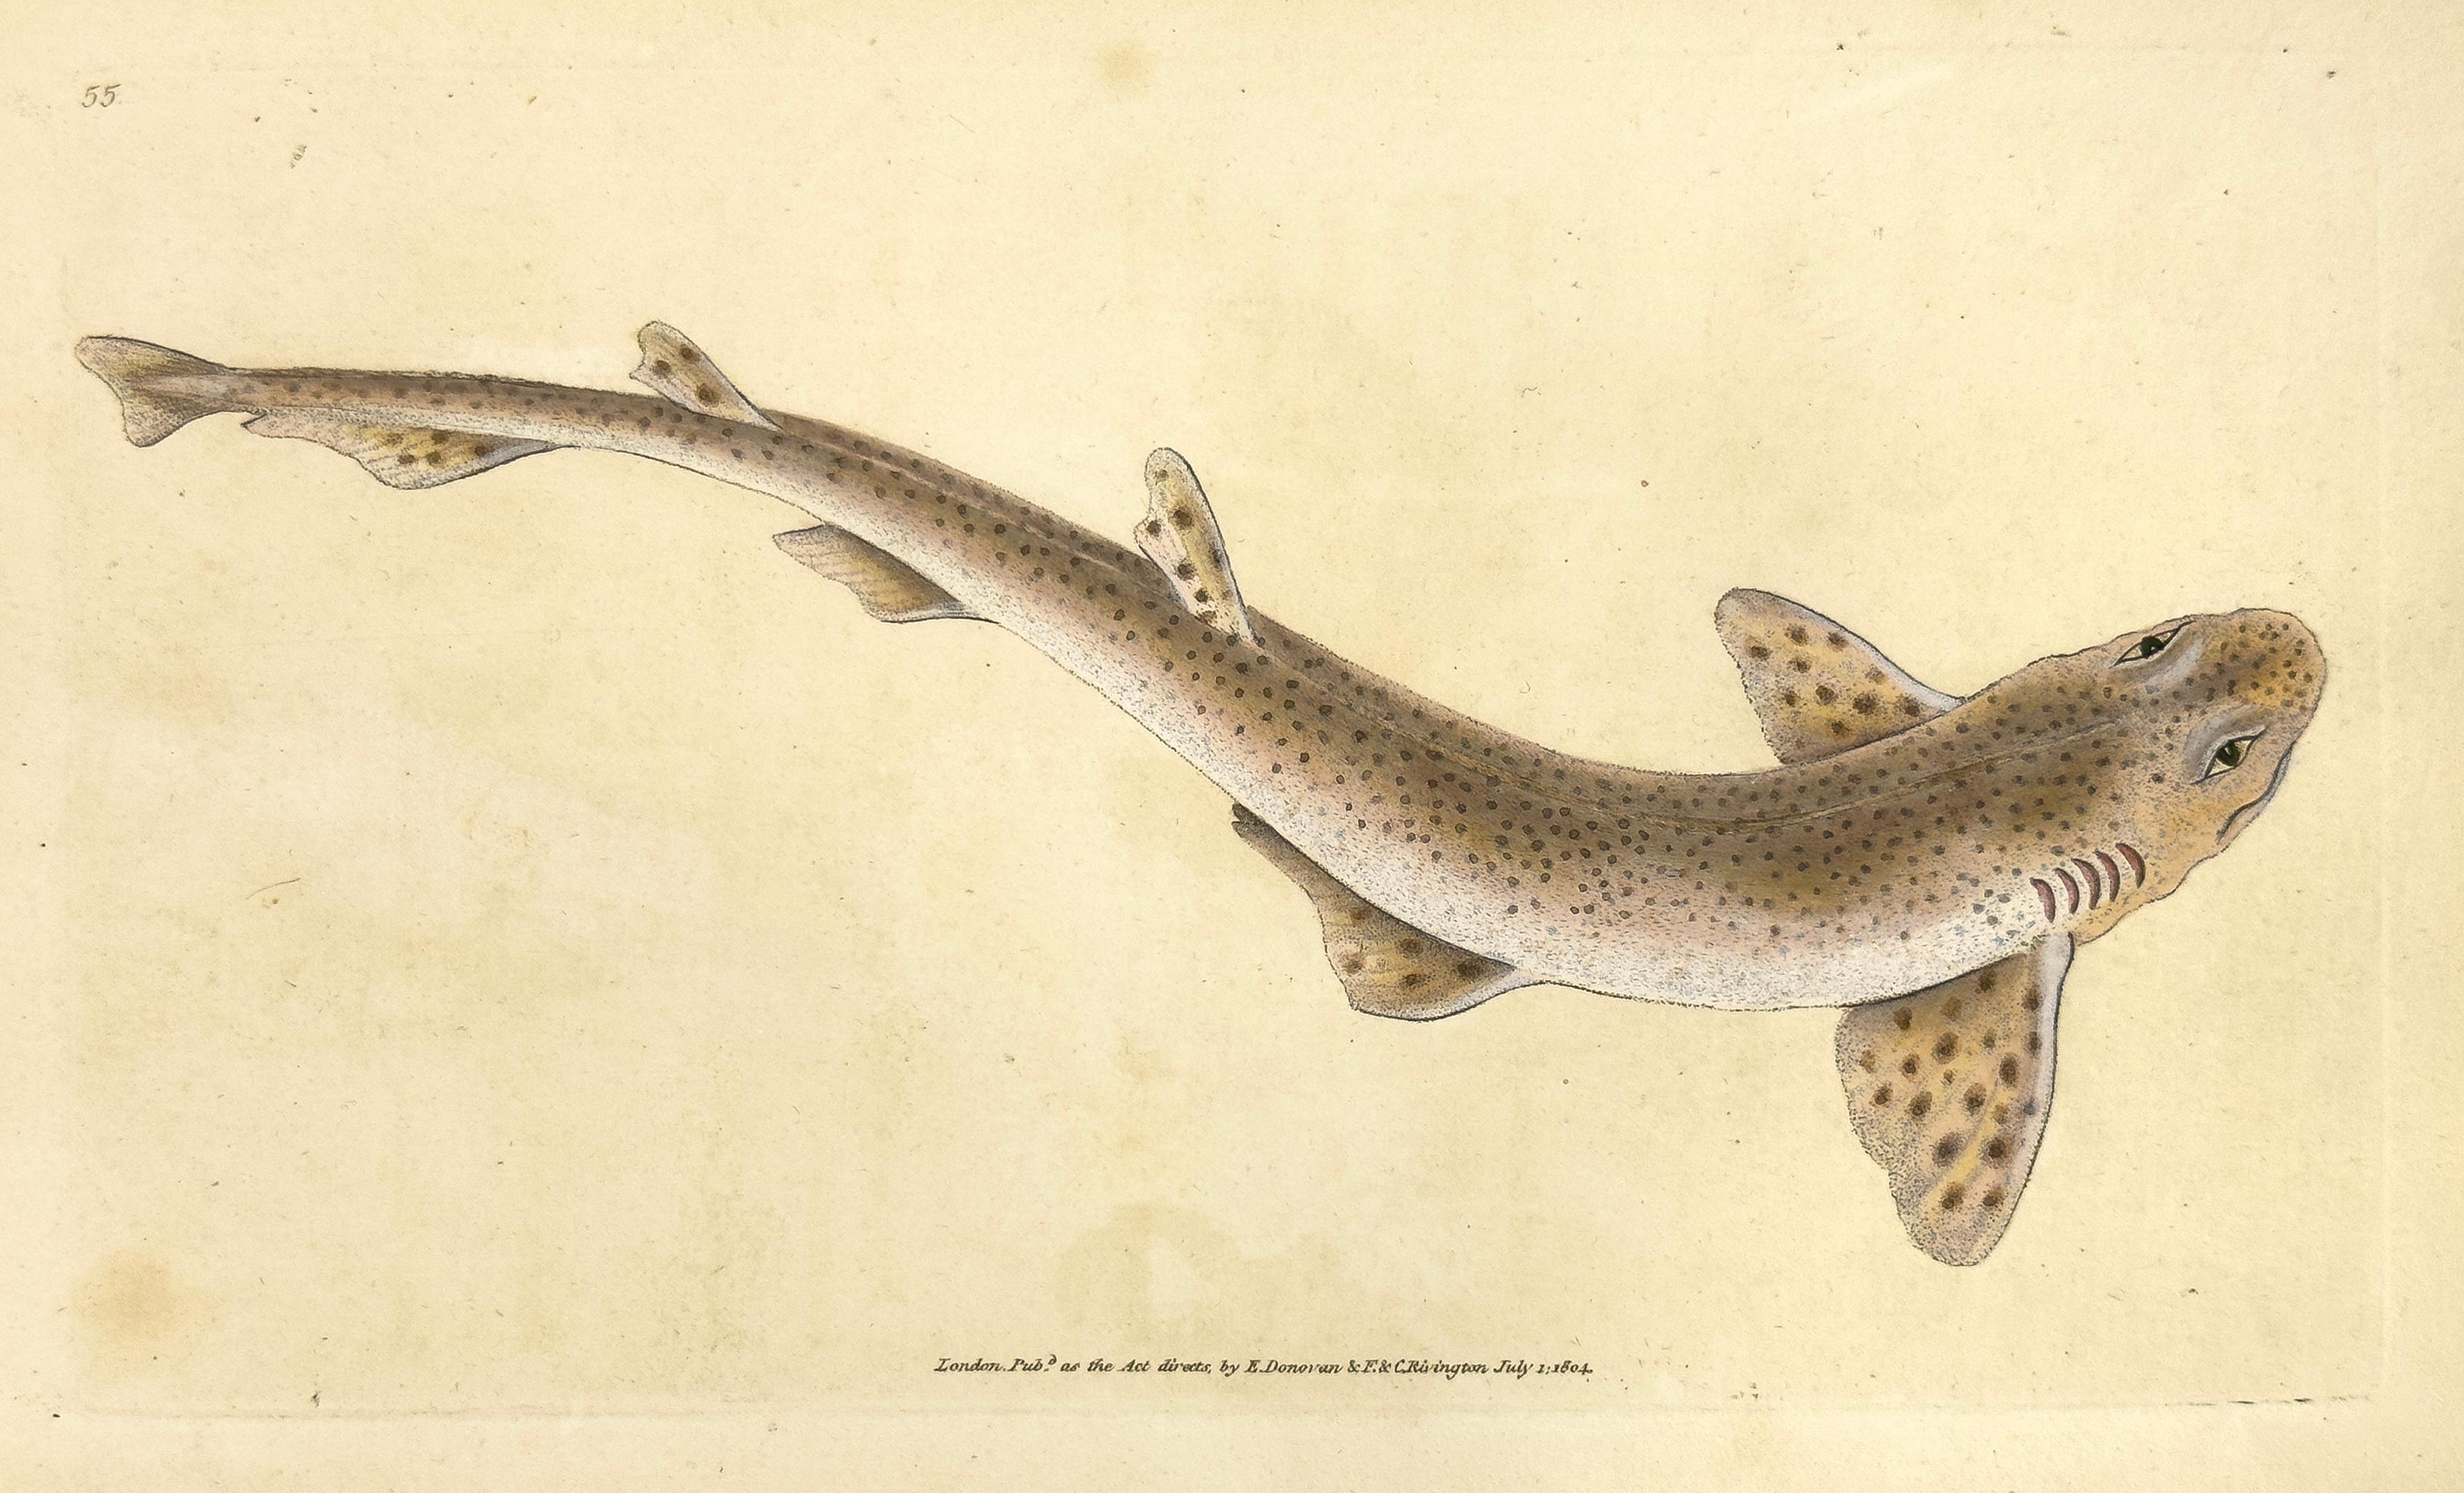 Animal Print Edward Donovan - 55: Squalus catulus, requin plus tacheté